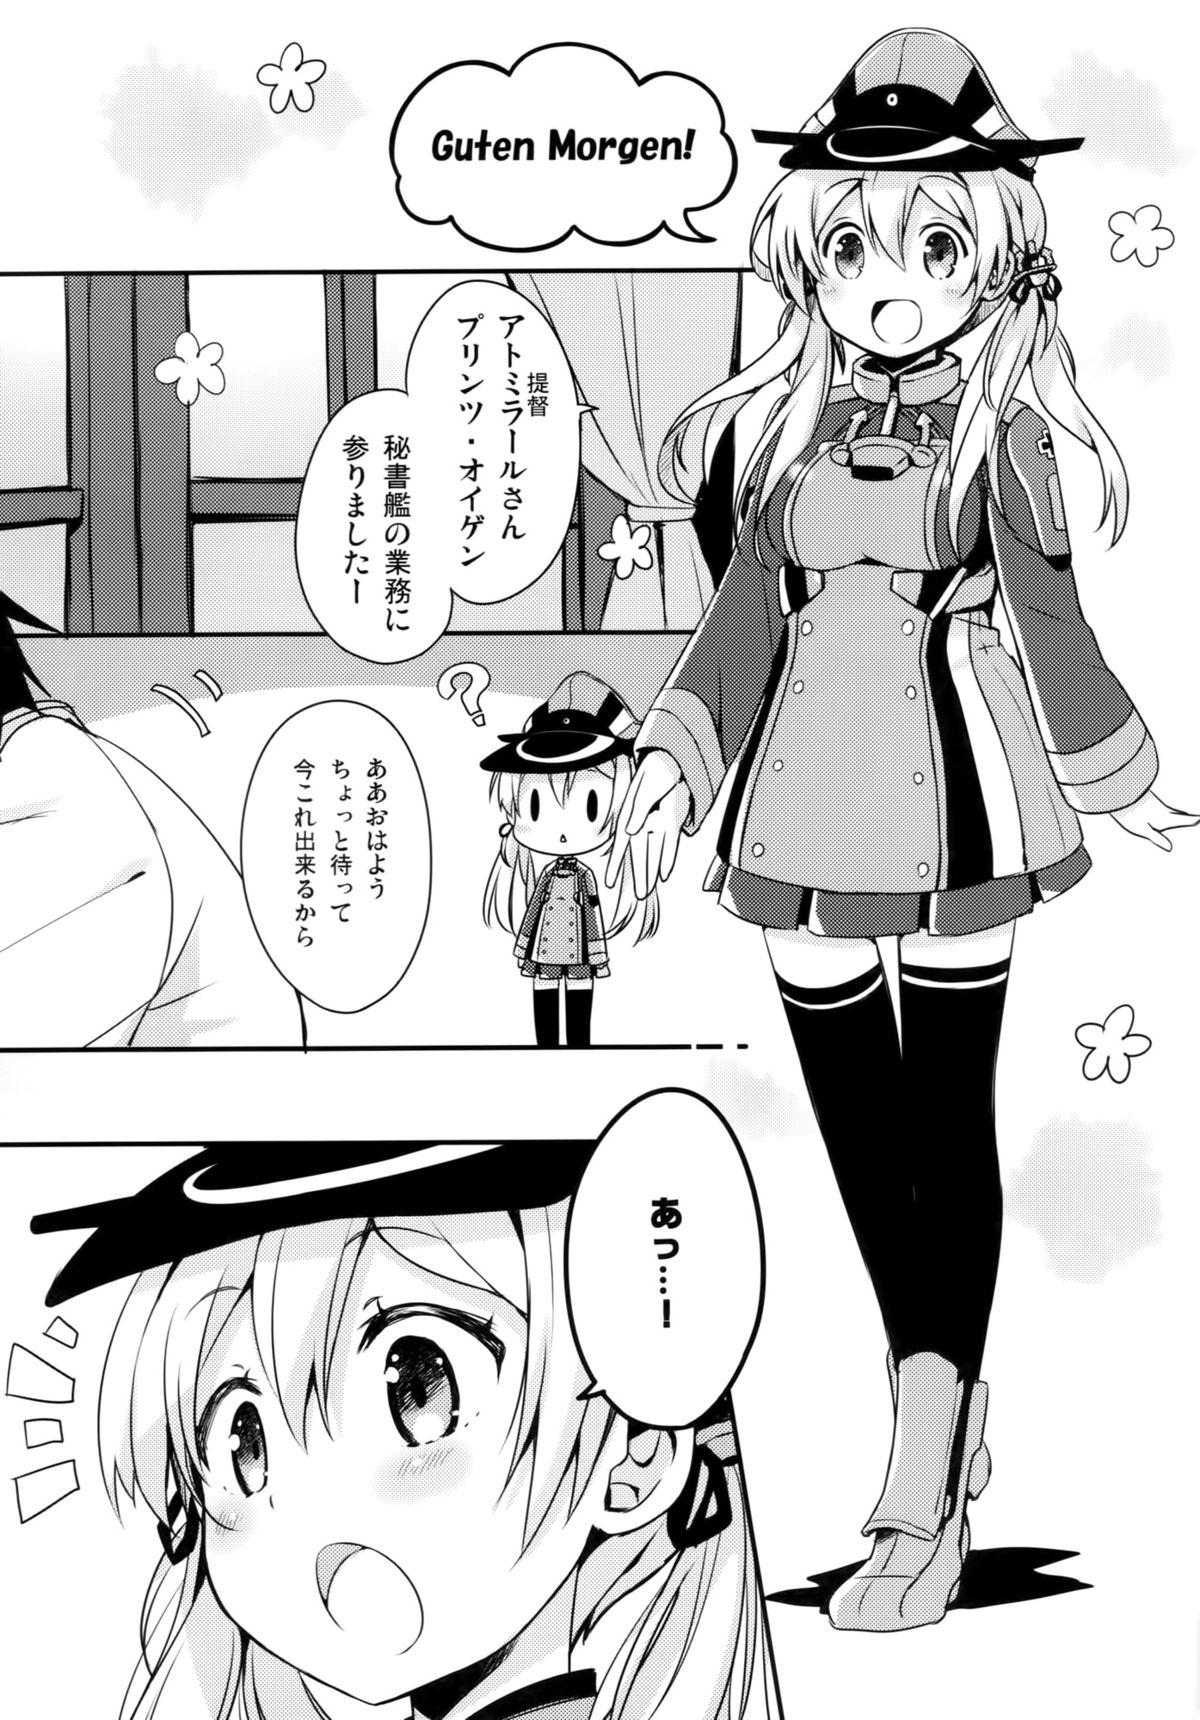 Tit Admiral-san Atatakai no ga Iino? - Kantai collection Peituda - Page 4